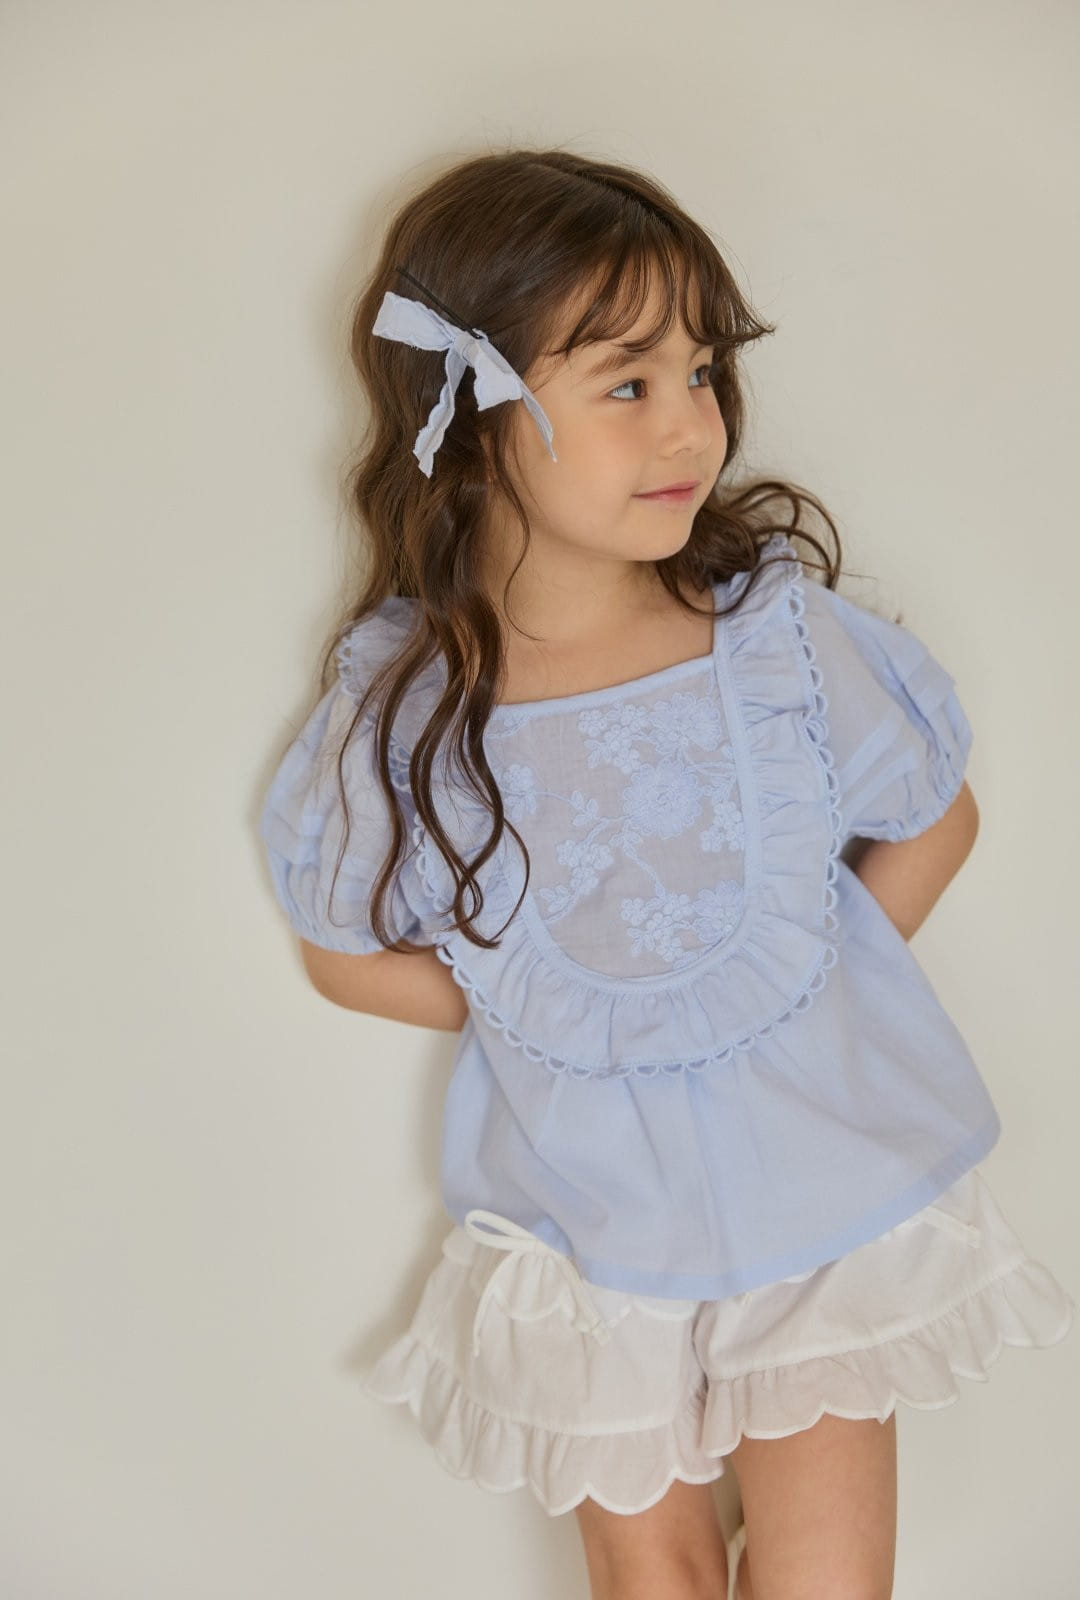 Coco Rabbit - Korean Children Fashion - #todddlerfashion - Ellen Blouse - 3